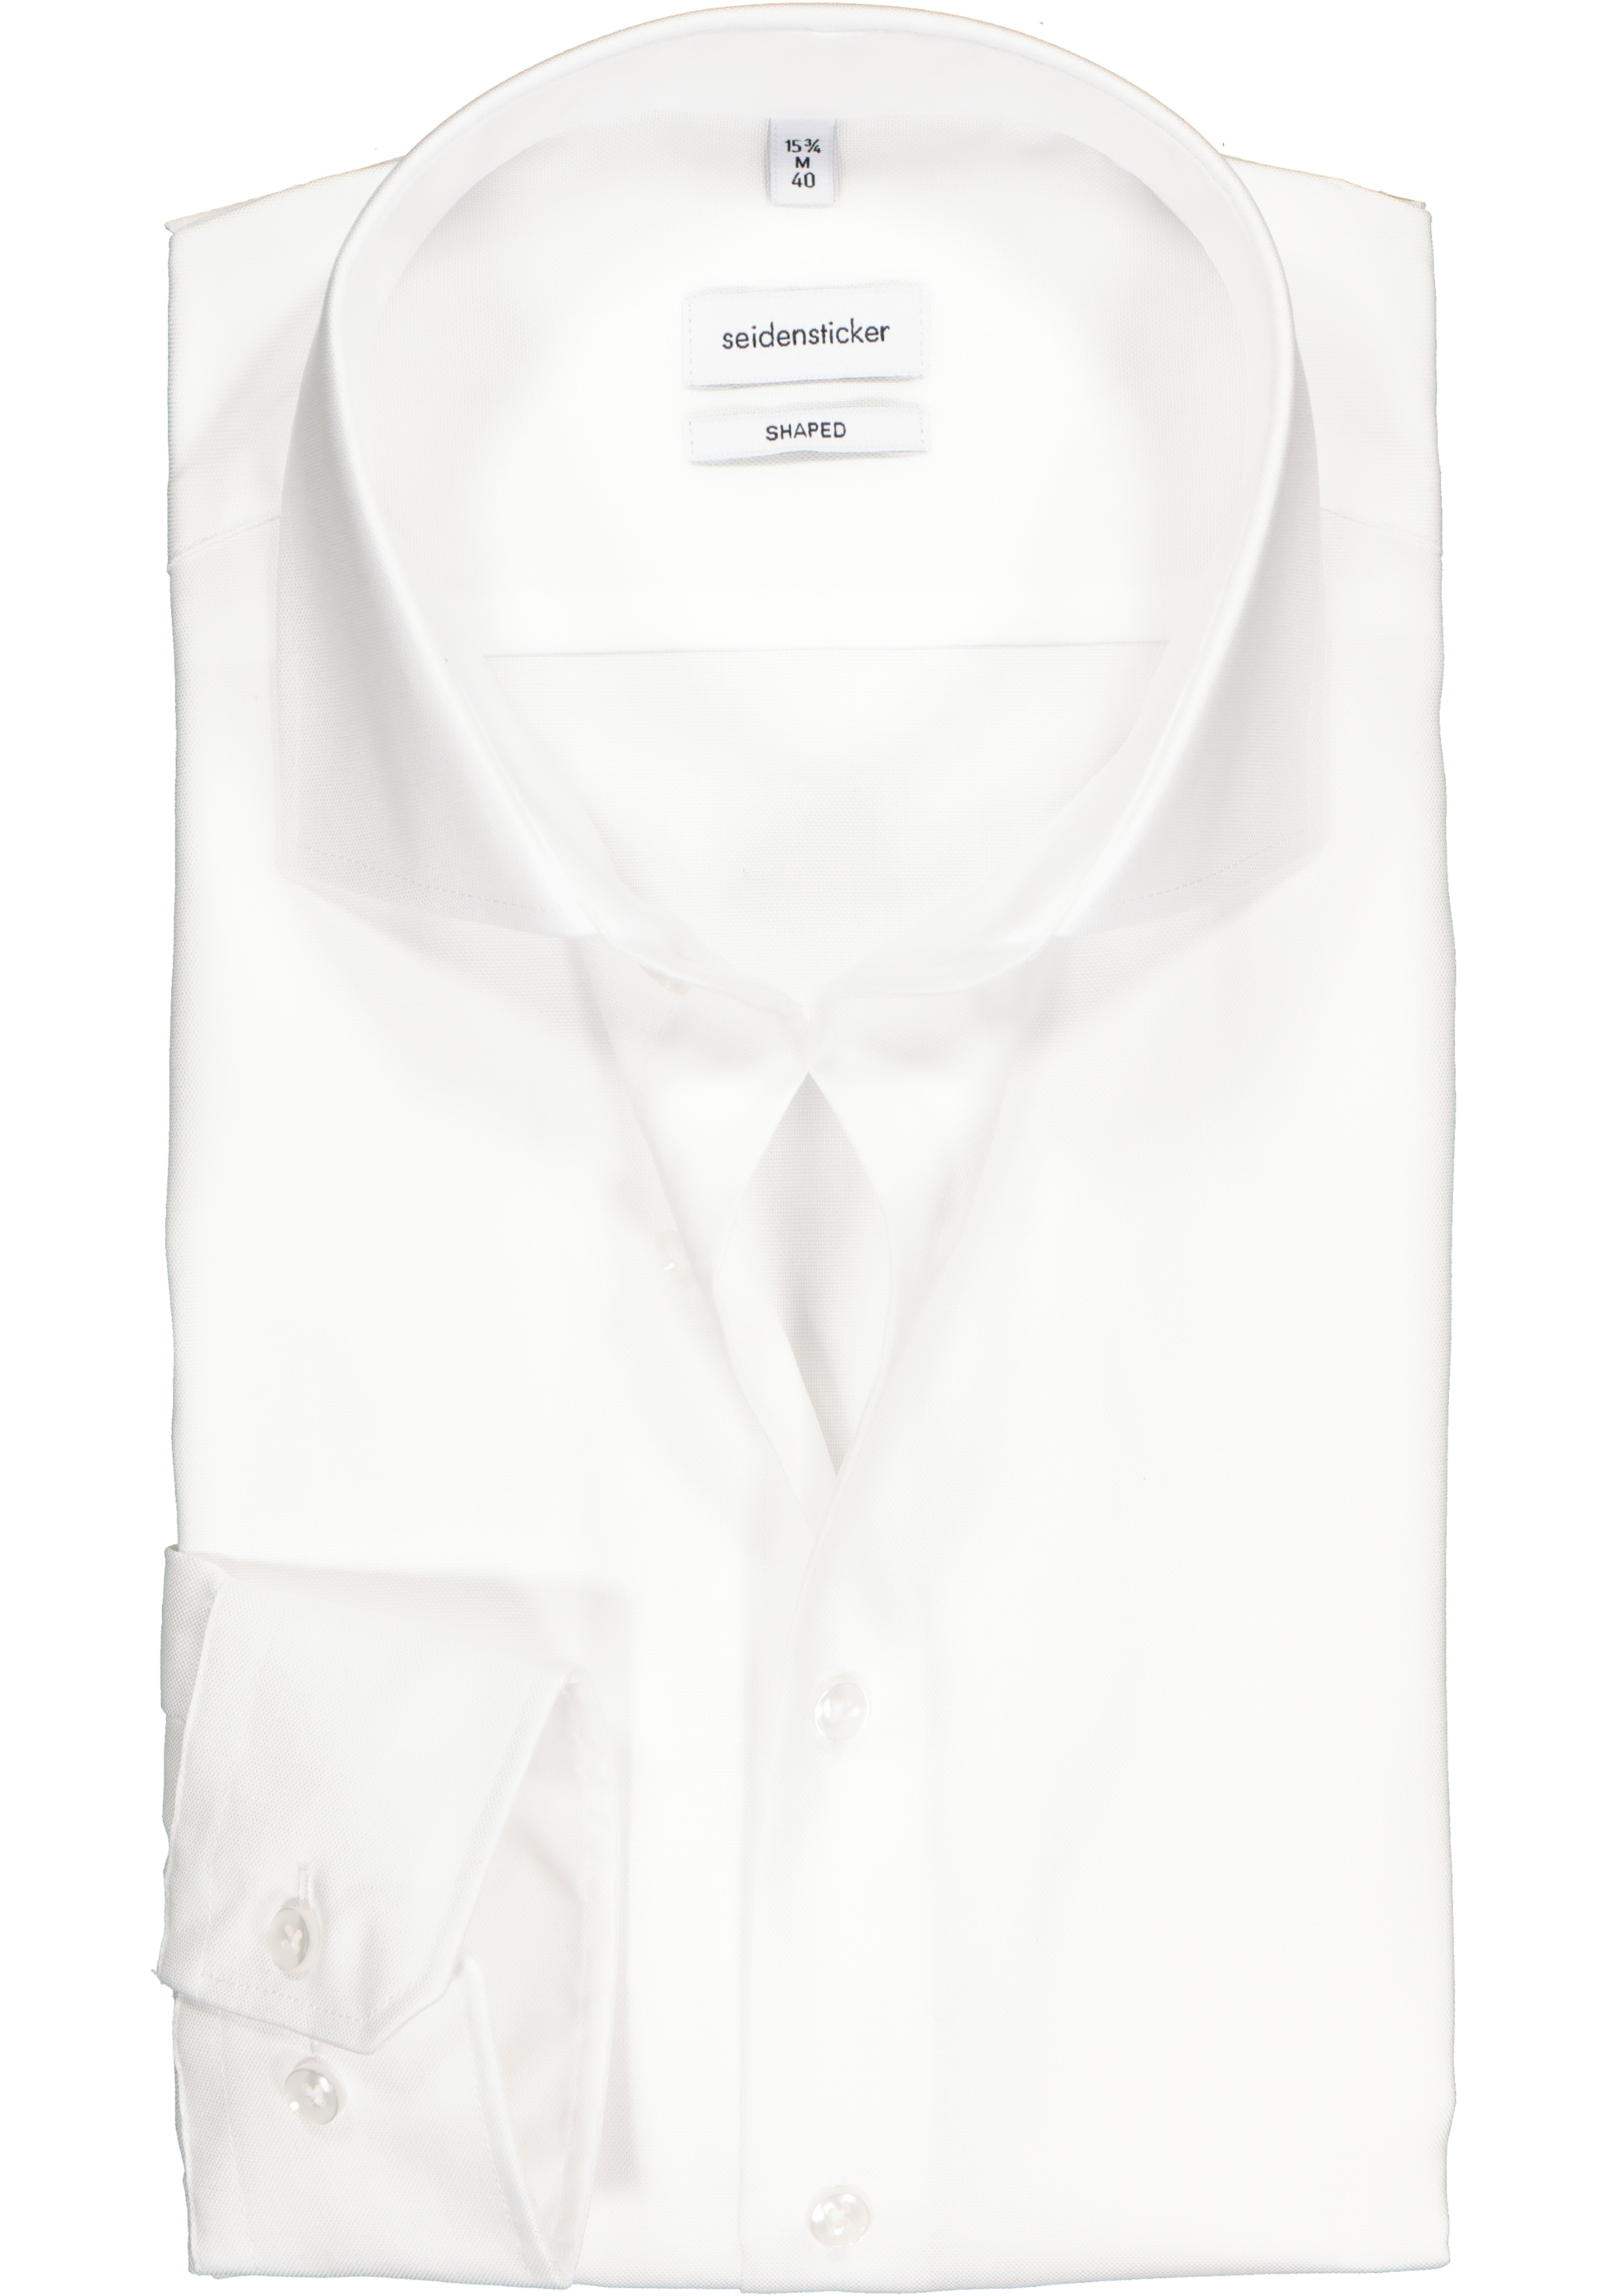 Seidensticker shaped fit overhemd, wit fijn Oxford